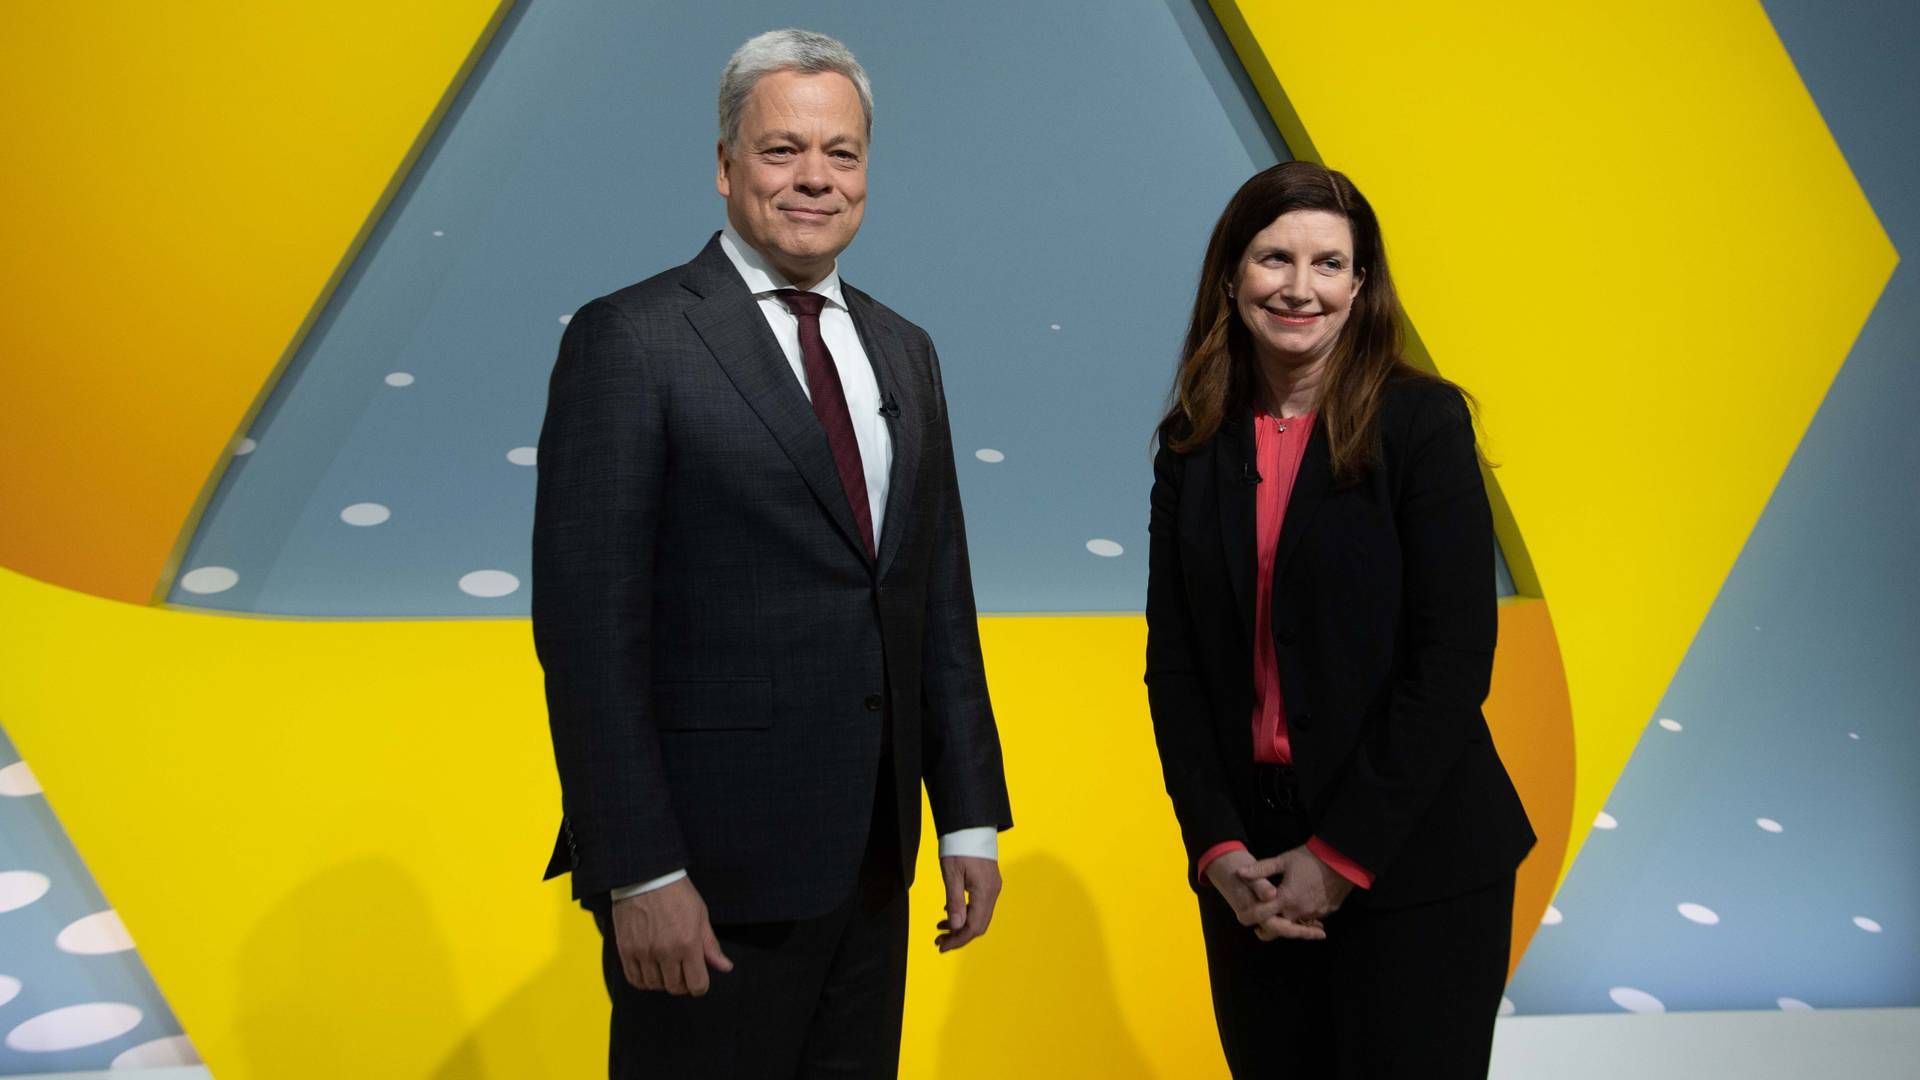 Der Chef und die Finanzchefin: Manfred Knof und Bettina Orlopp | Foto: picture alliance / SvenSimon | Malte Ossowski/SVEN SIMON